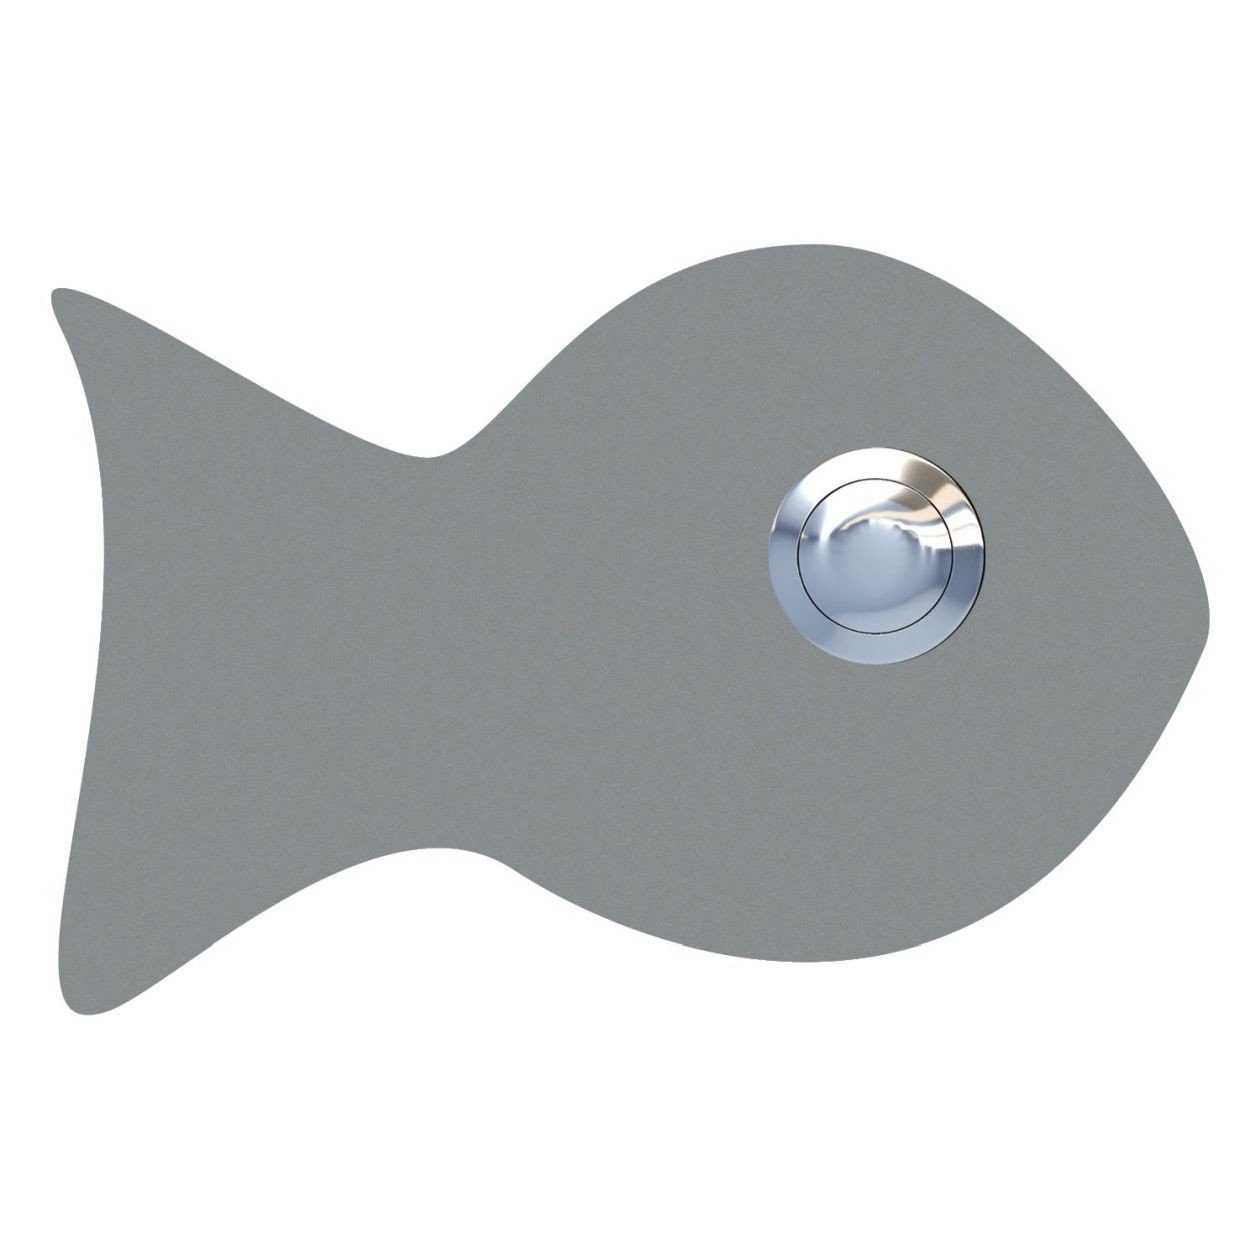 Bravios Briefkasten Klingeltaster Grau Fisch Metallic